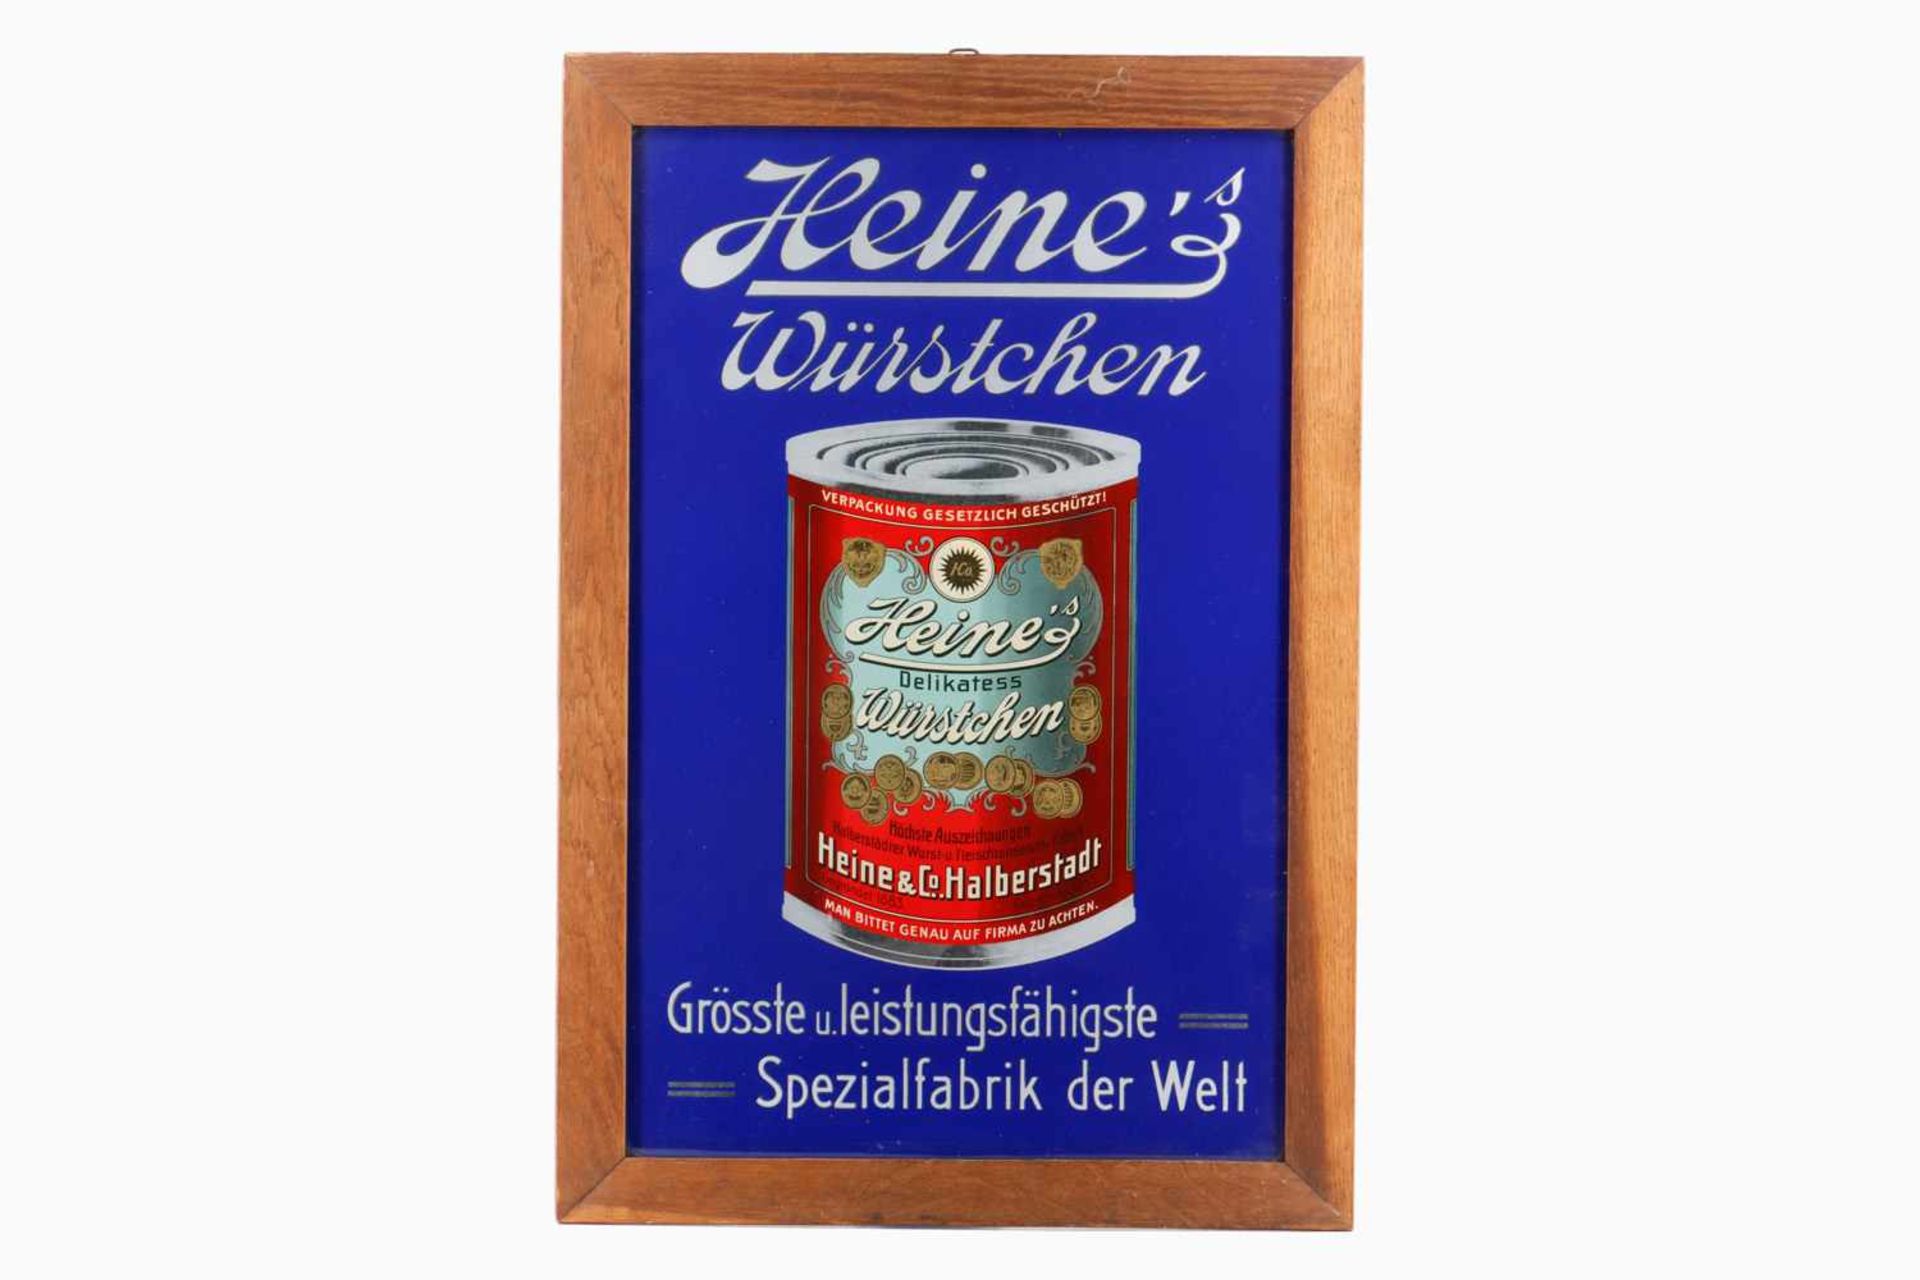 Glaswerbeschild "Heine`s Würstchen", um 1900, gerahmt, 56 x 38 cm- - -22.50 % buyer's premium on the